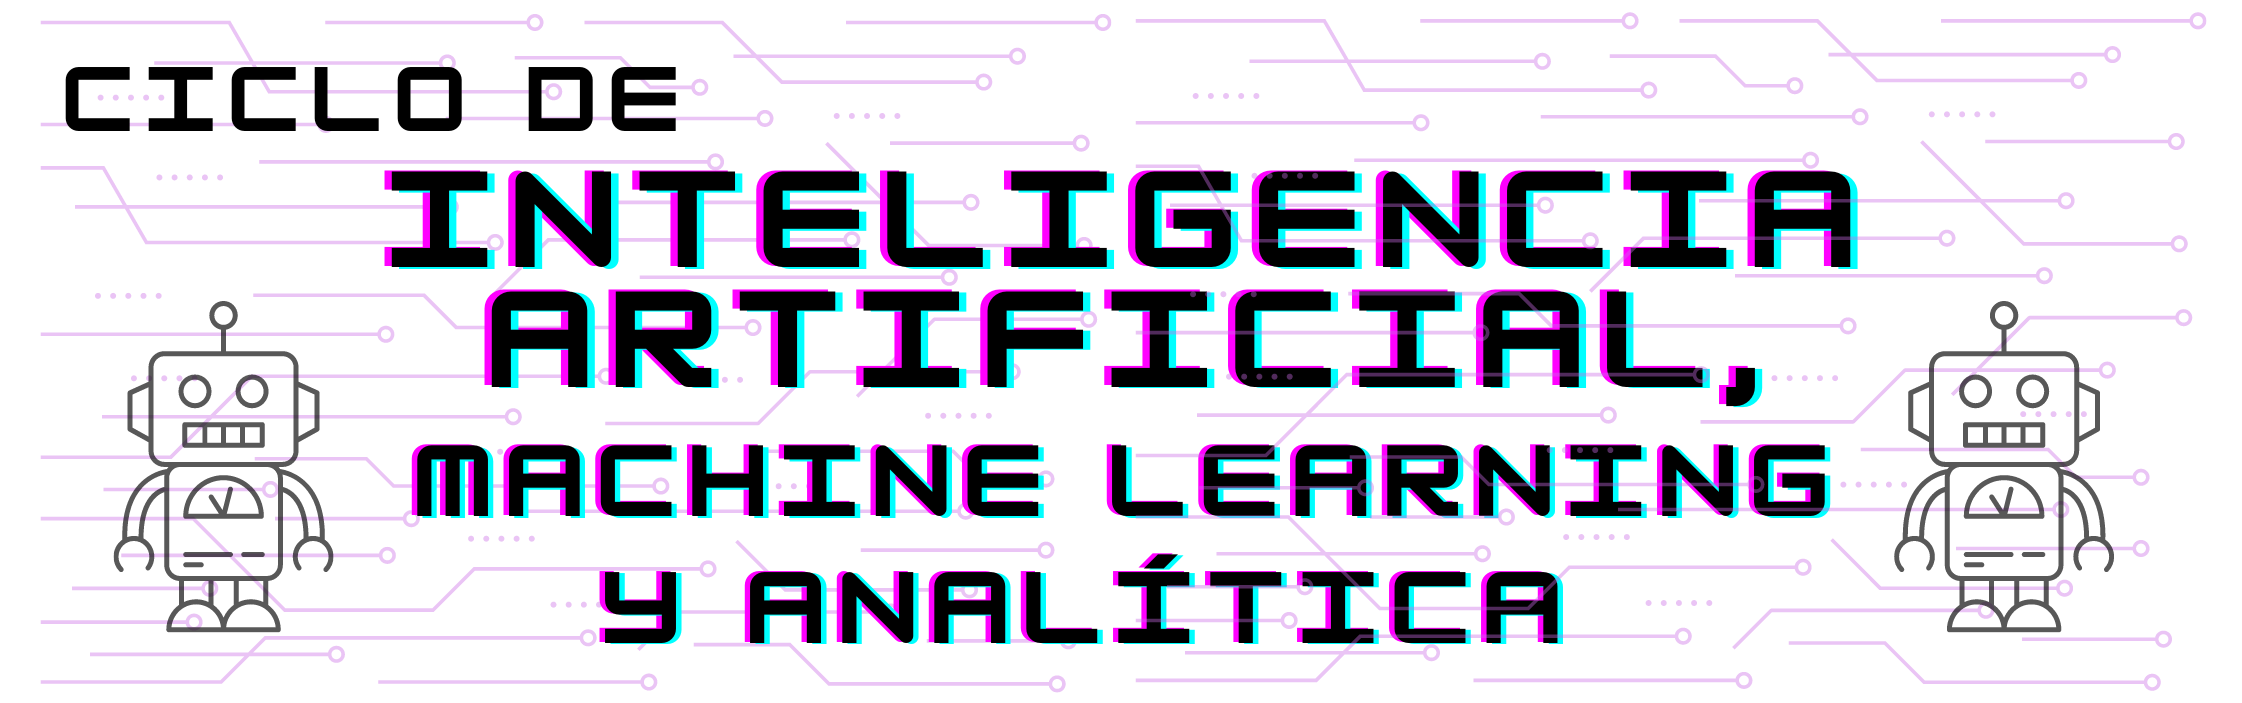 Banner de Ciclo de Inteligencia artificial, machine learning y analítica